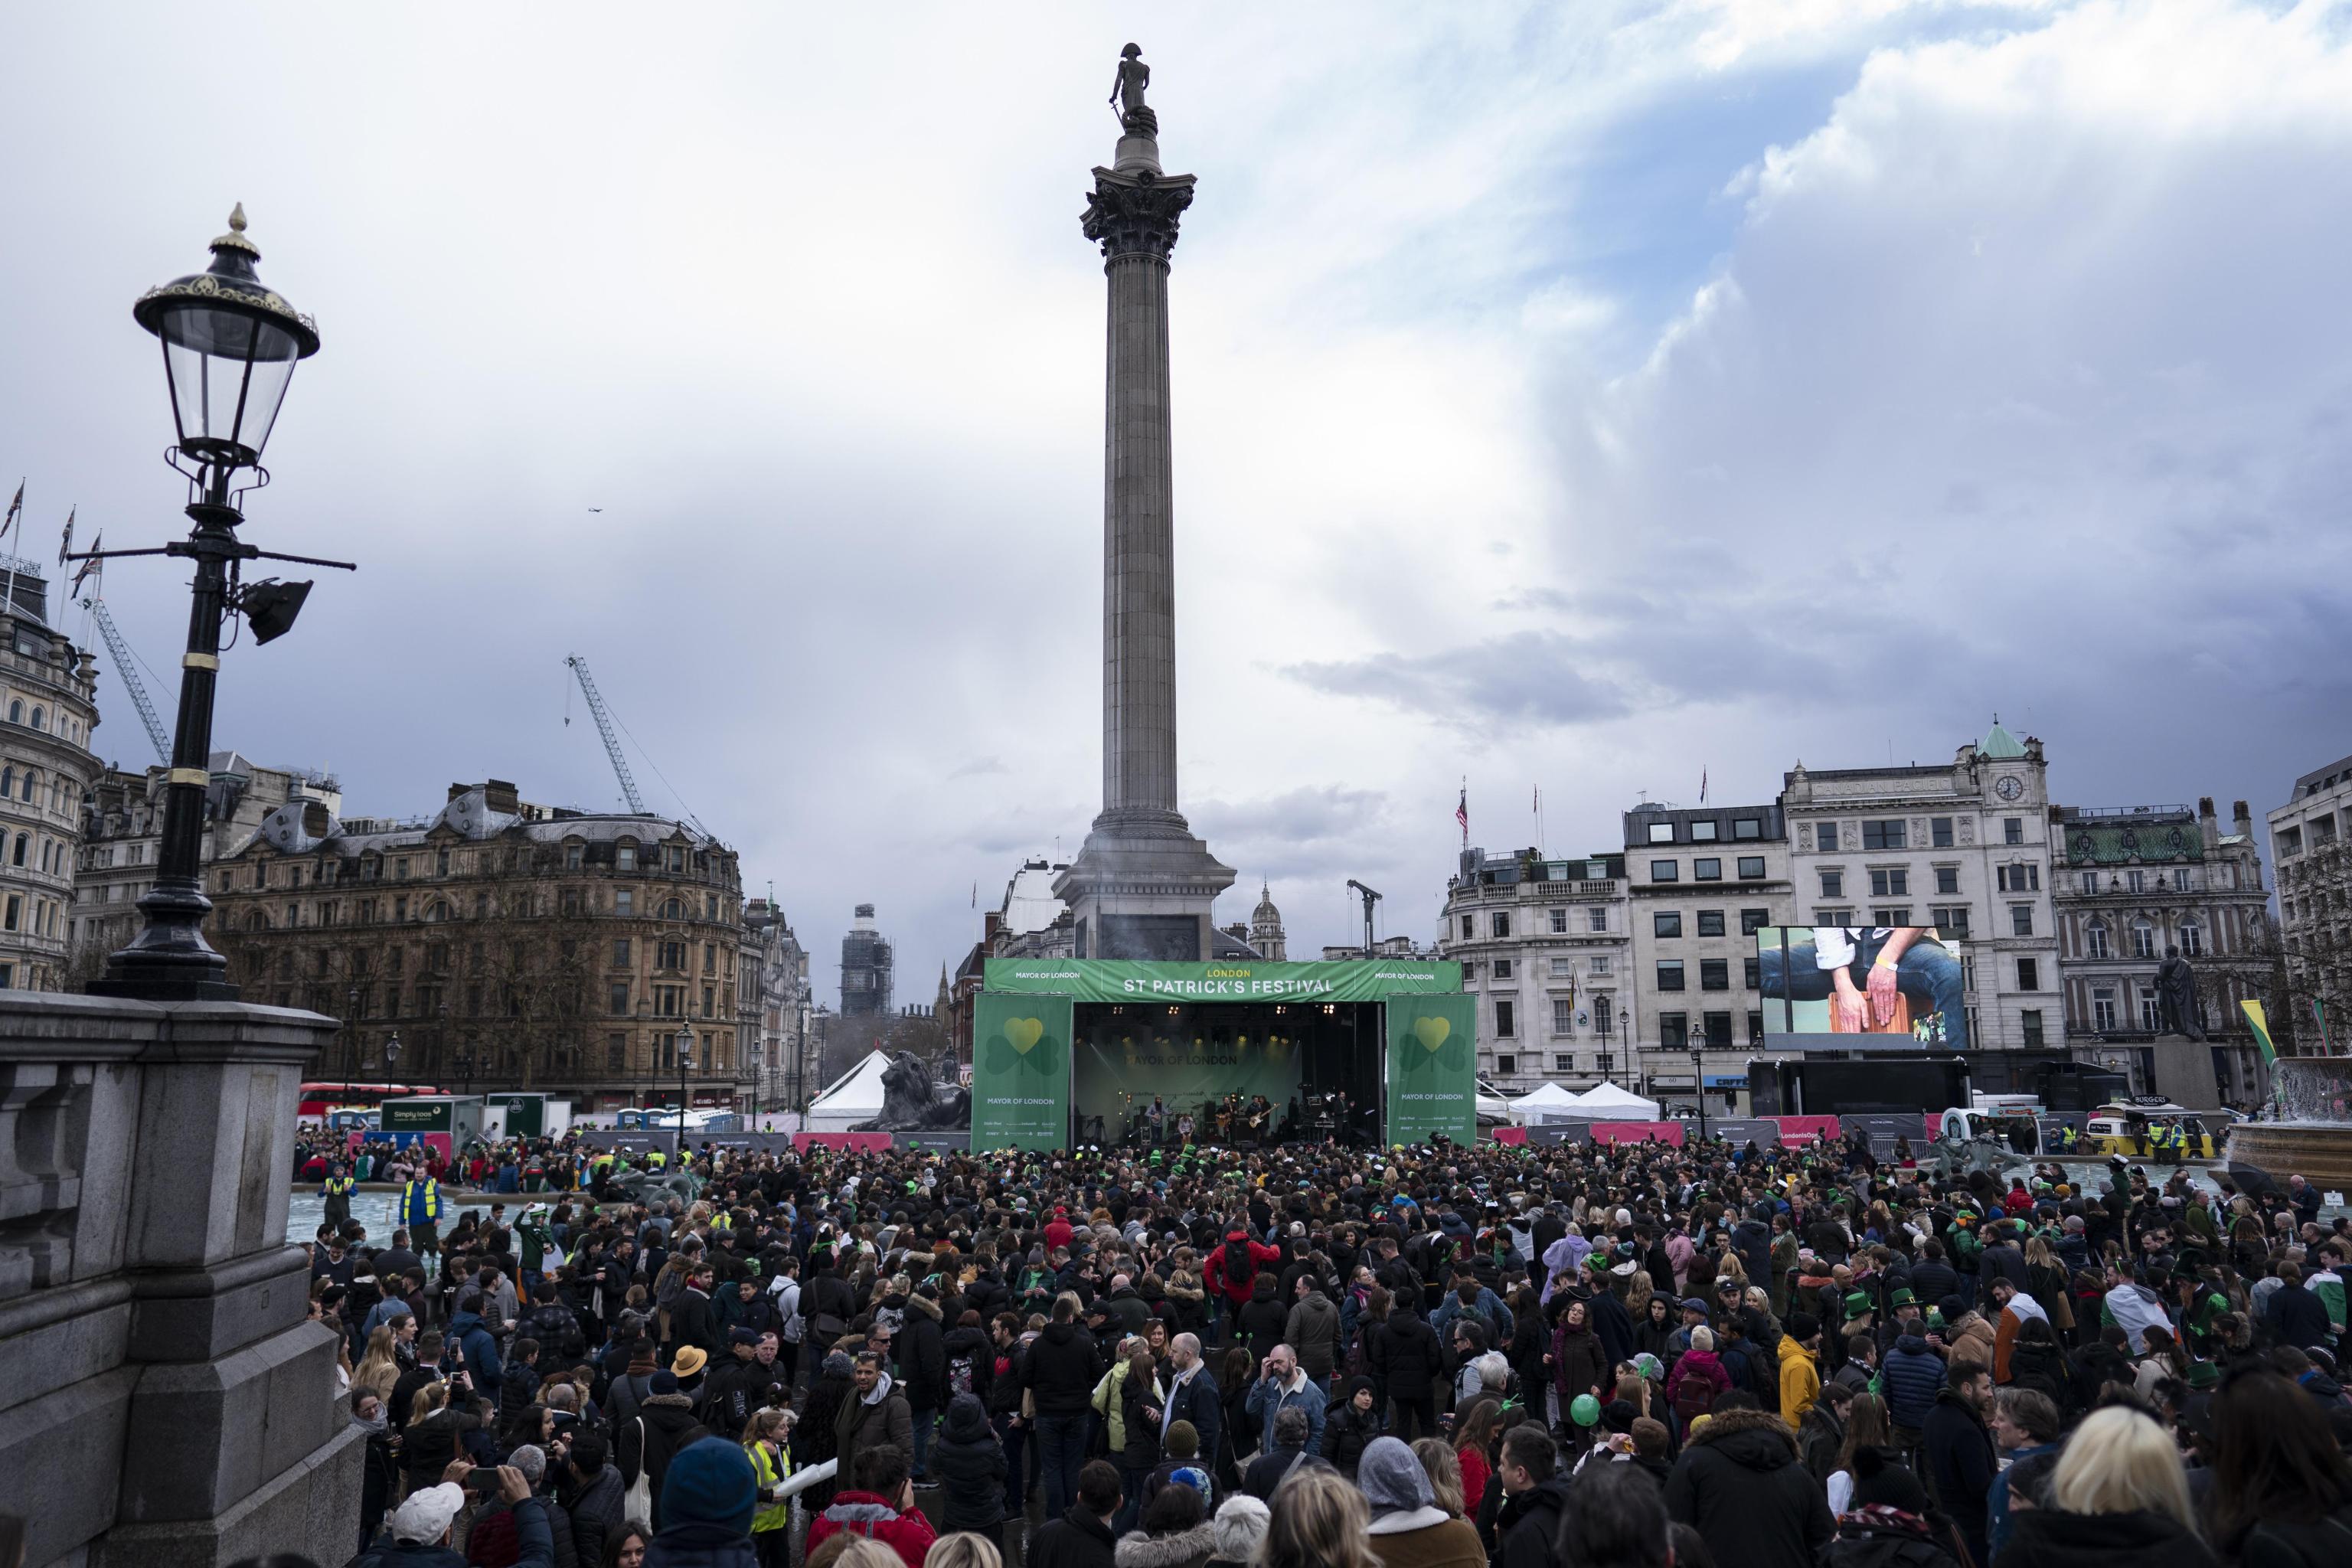 Le persone riunite nel centro di Londra festeggiano il giorno di San Patrizio